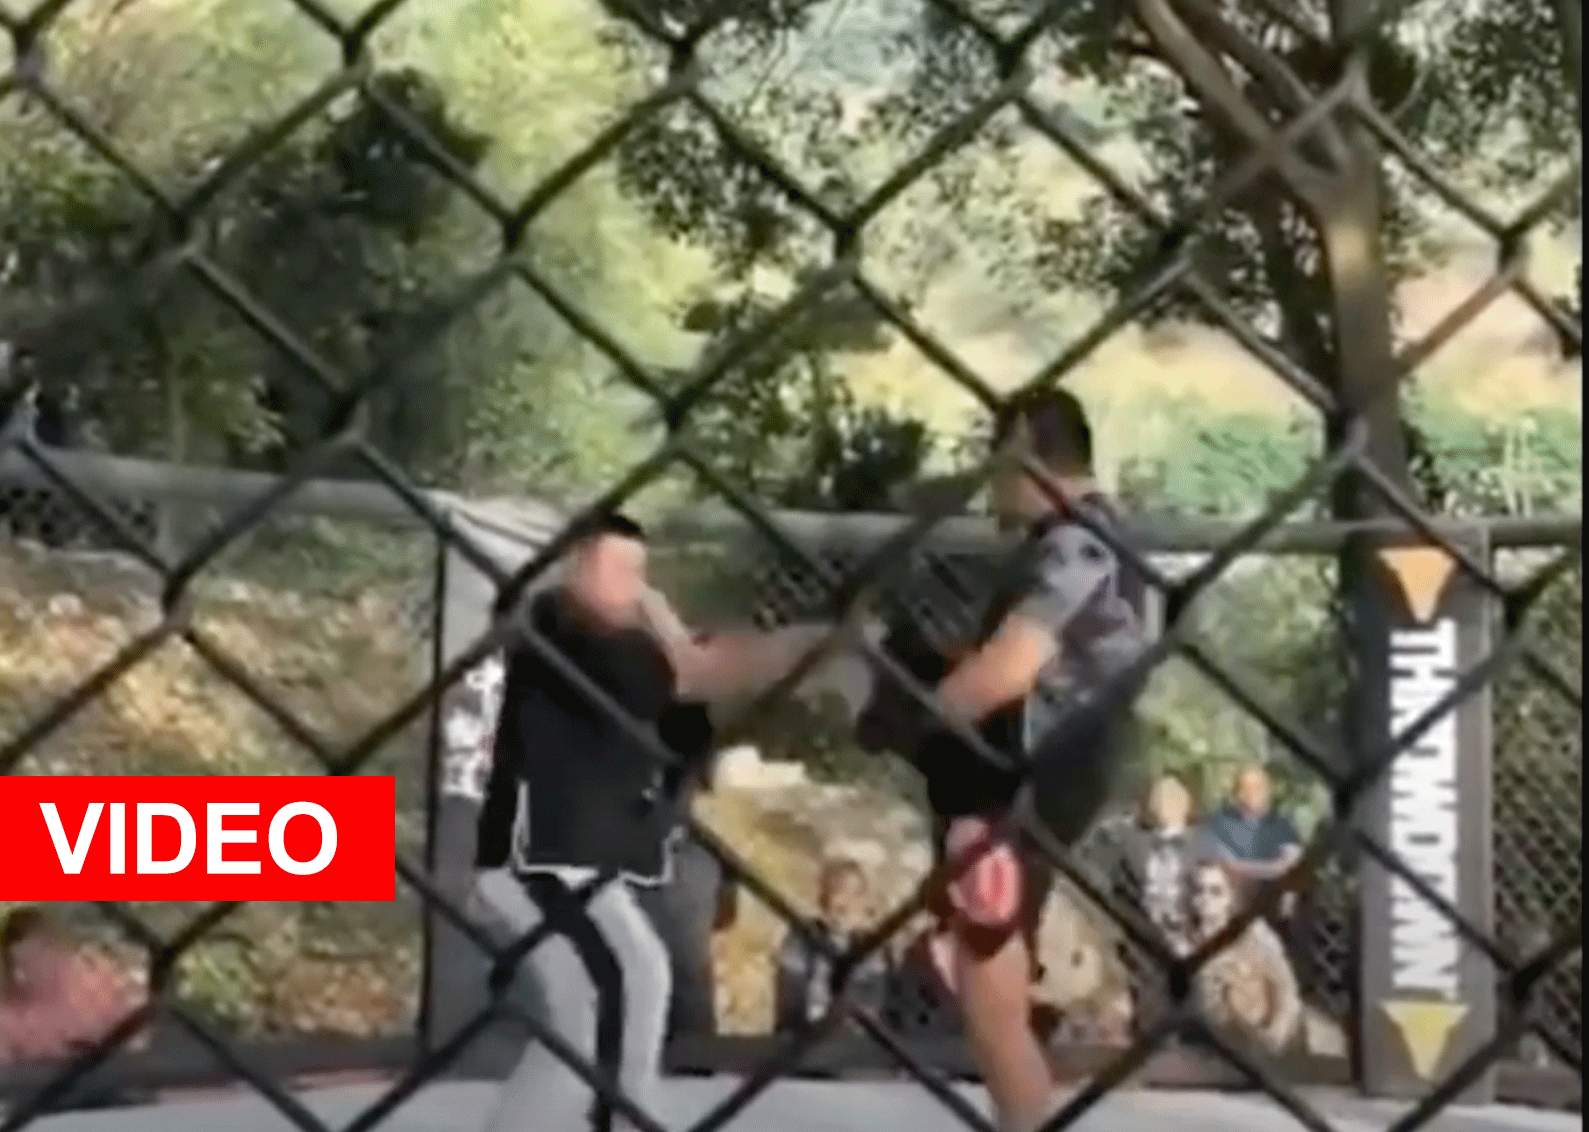 WATJE: Bekende MMA-vechter schakelt Tai Chi meester in 10 seconden uit (video)